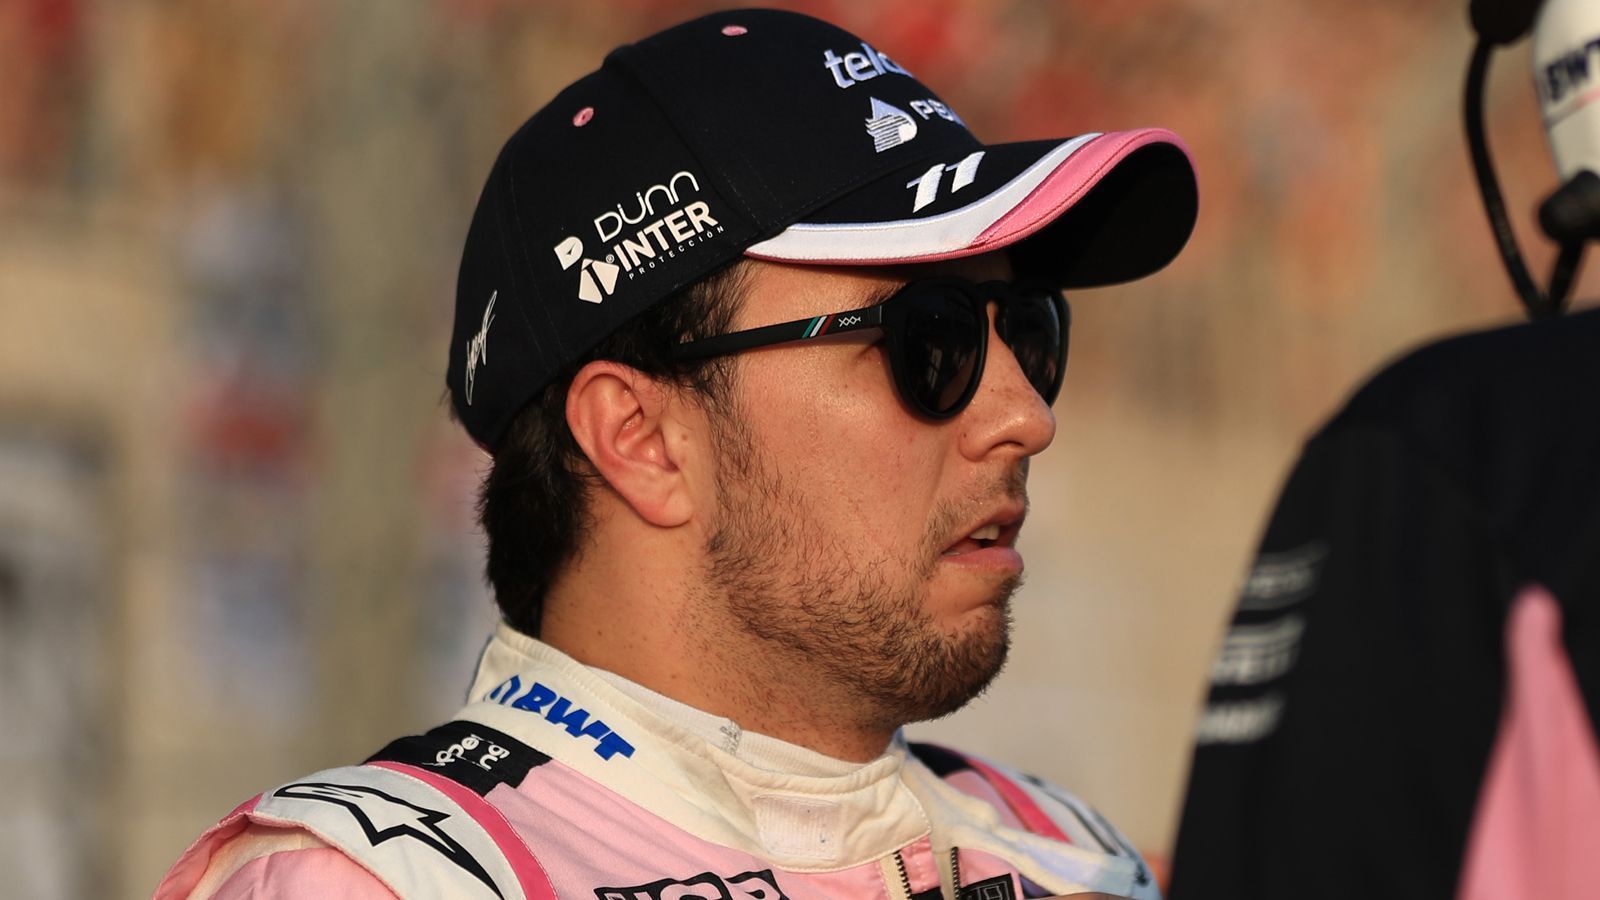 
                <strong>11. Sergio Perez (Racing Point)</strong><br>
                Seit Jahren liefert er für Racing Point (vorher: Force India) ab, deklassierte seinen Teamkollegen Lance Stroll 18:3. In der WM-Wertung sicherte er sich Platz 10, indem er aus seinem mäßigen Dienstauto oft das Optimale herausholte. Schnappte sich mit einem klasse Manöver gegen Lando Norris in der letzten Runde in Abu Dhabi noch den zehnten Platz der Fahrerwertung.
              